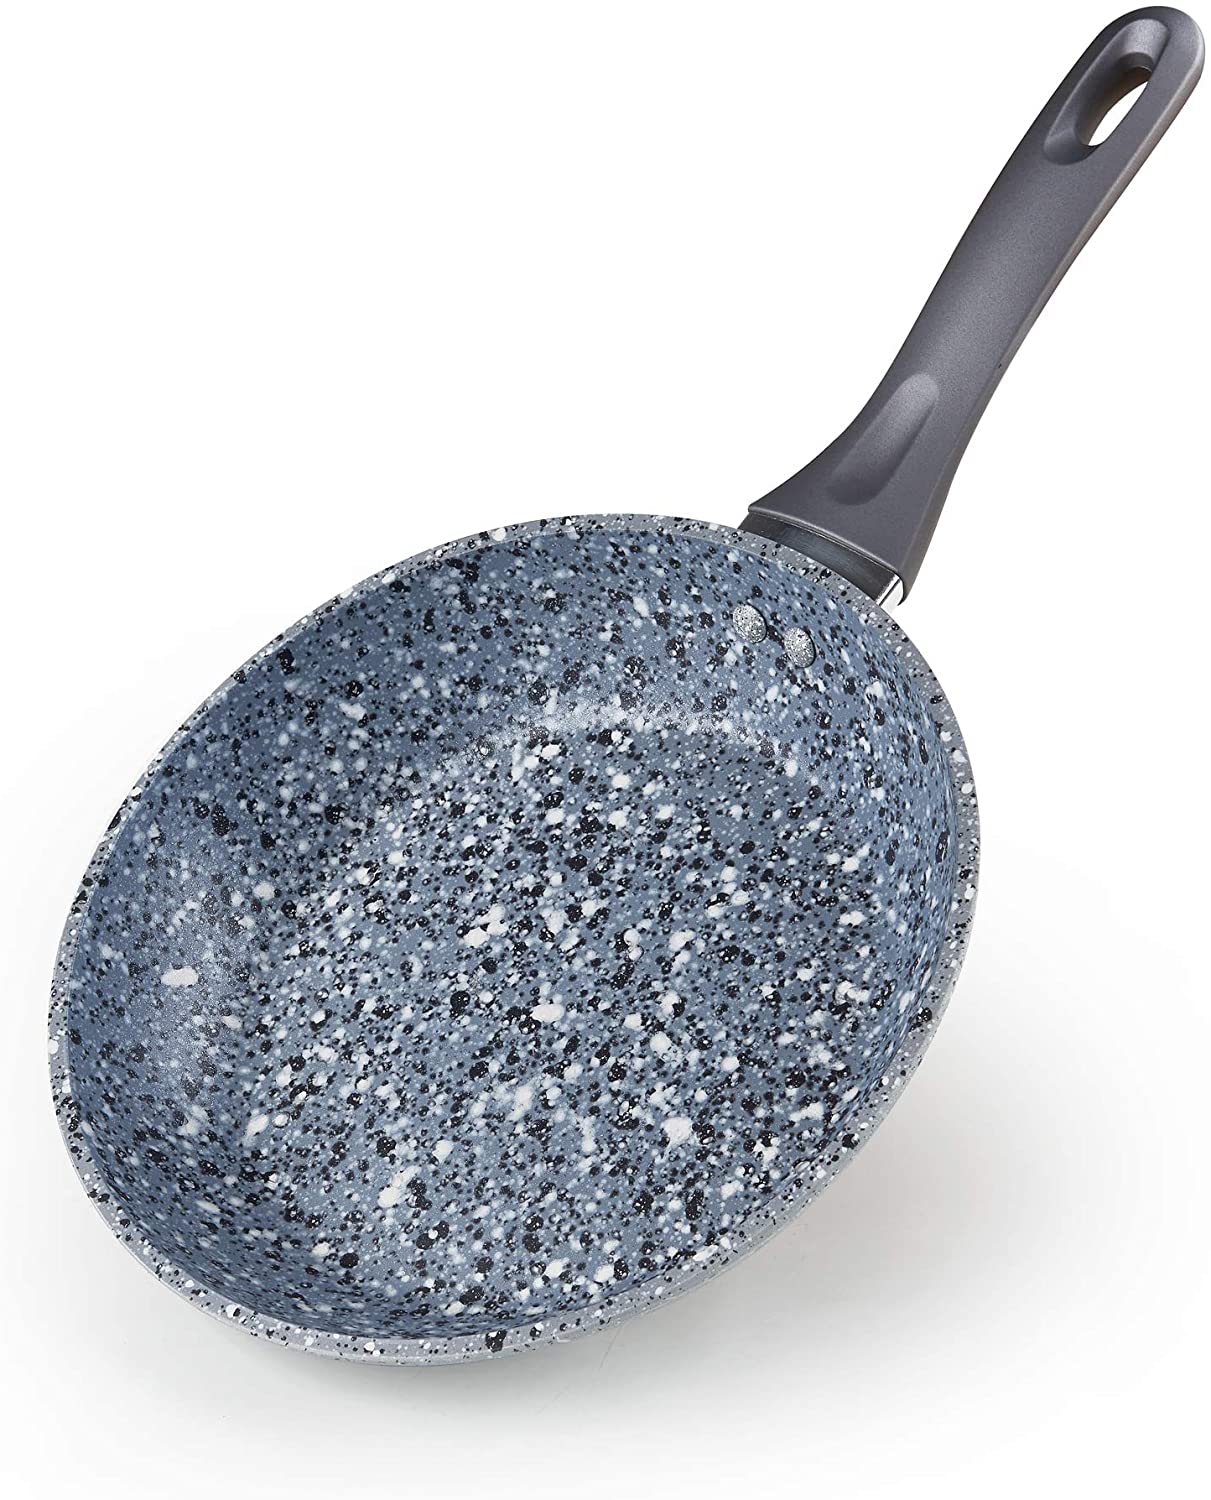 Cook N Home 02667 Ultra Granite Nonstick Skillet Fry Pan, 9.5